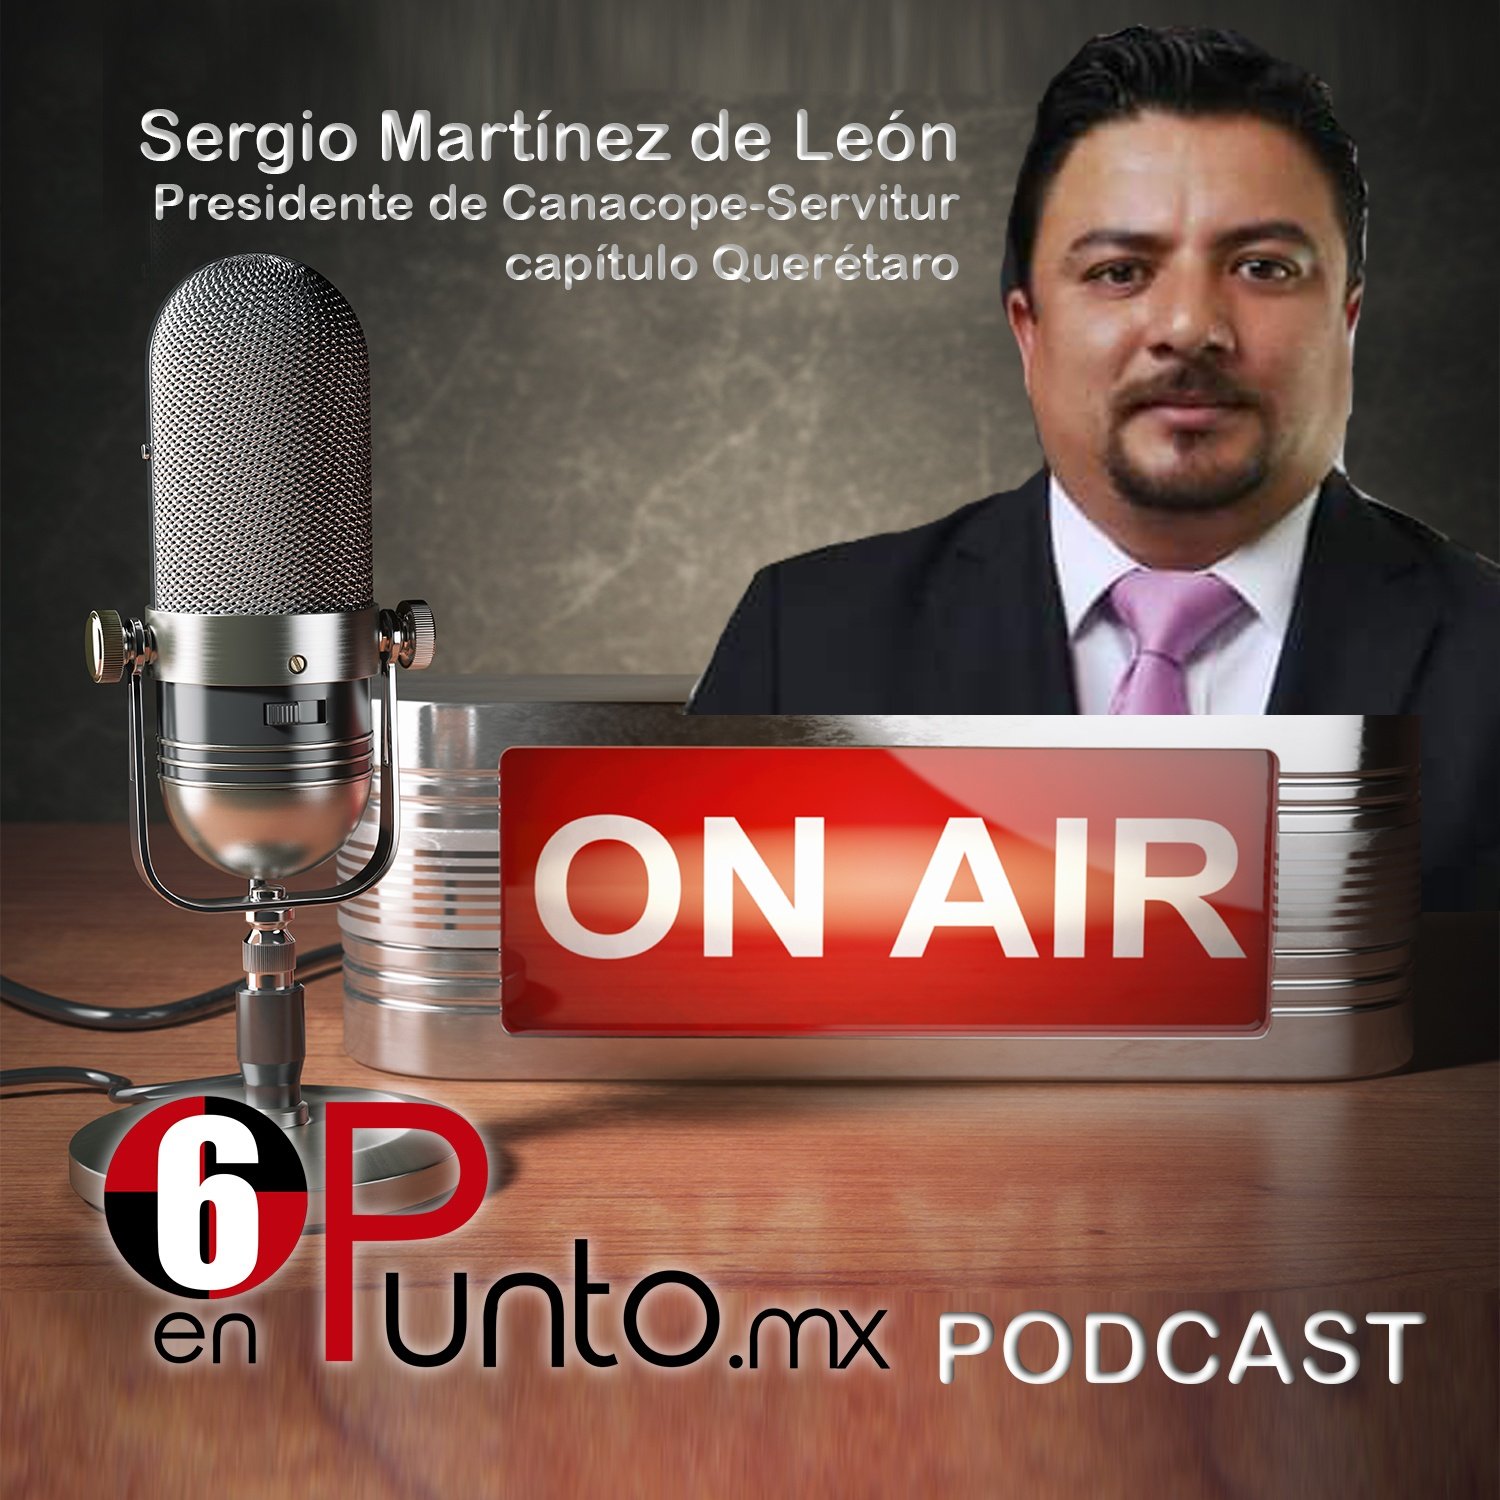 Sergio Martínez de León, Presidente de Canacope - Servitur Querétaro